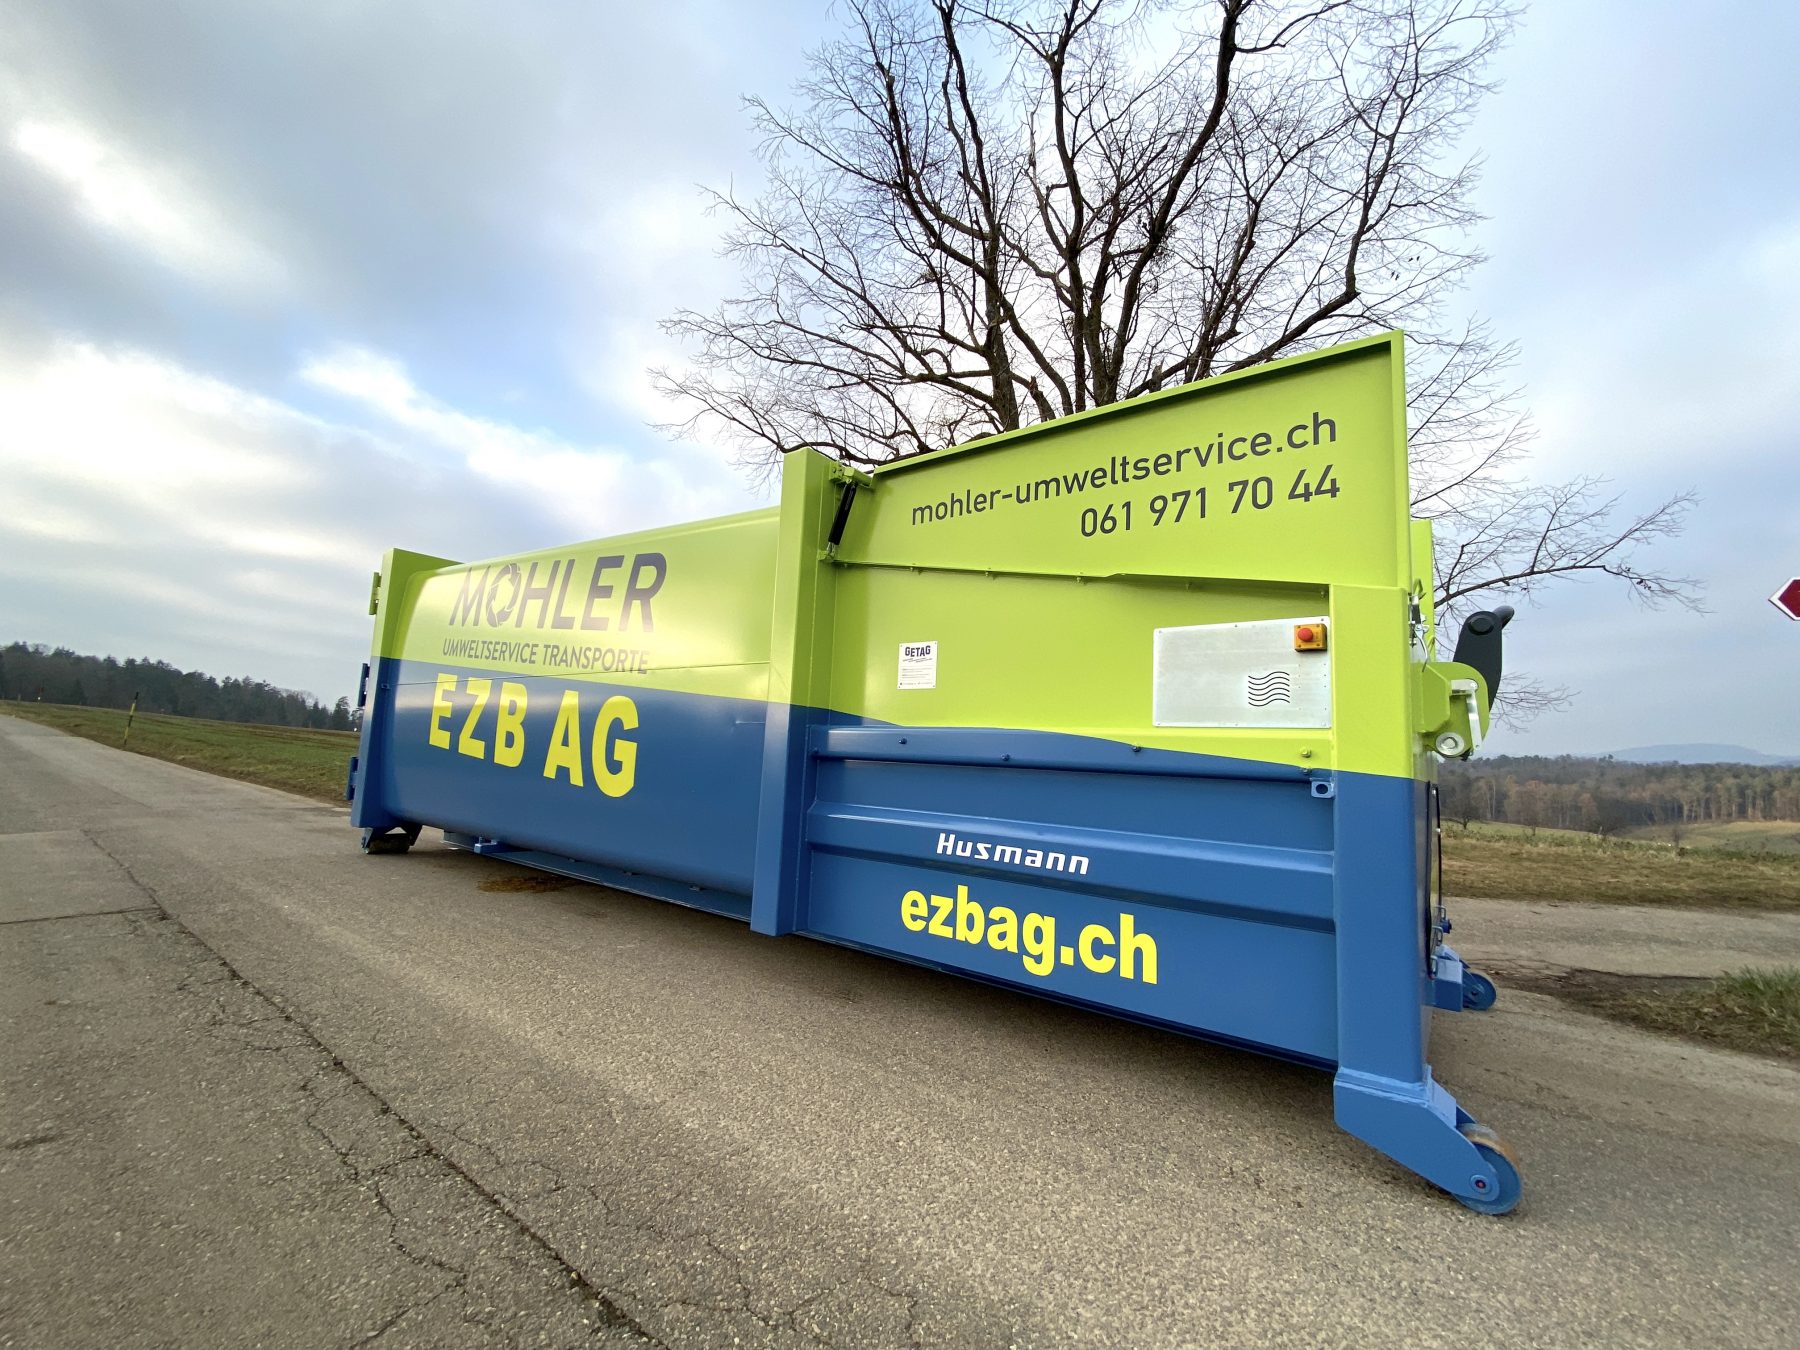 EZB AG / Mohler Umweltservice Transporte | JOST Beschriftungen Liestal